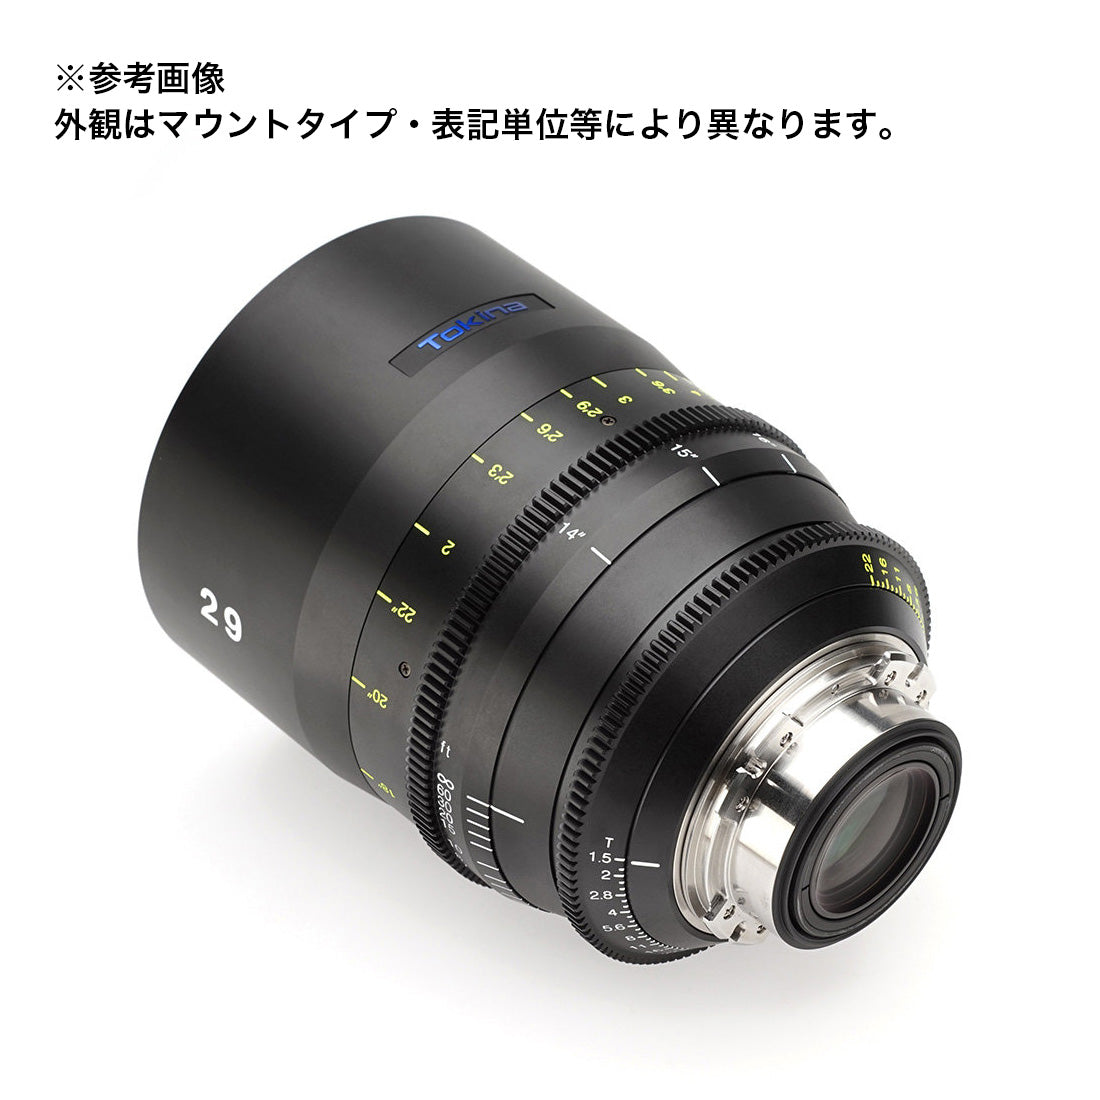 Tokina(トキナー) シネマプライムレンズ VISTA 29mm T1.5CINEMA LENS PLマウント フィート表記 [264246]